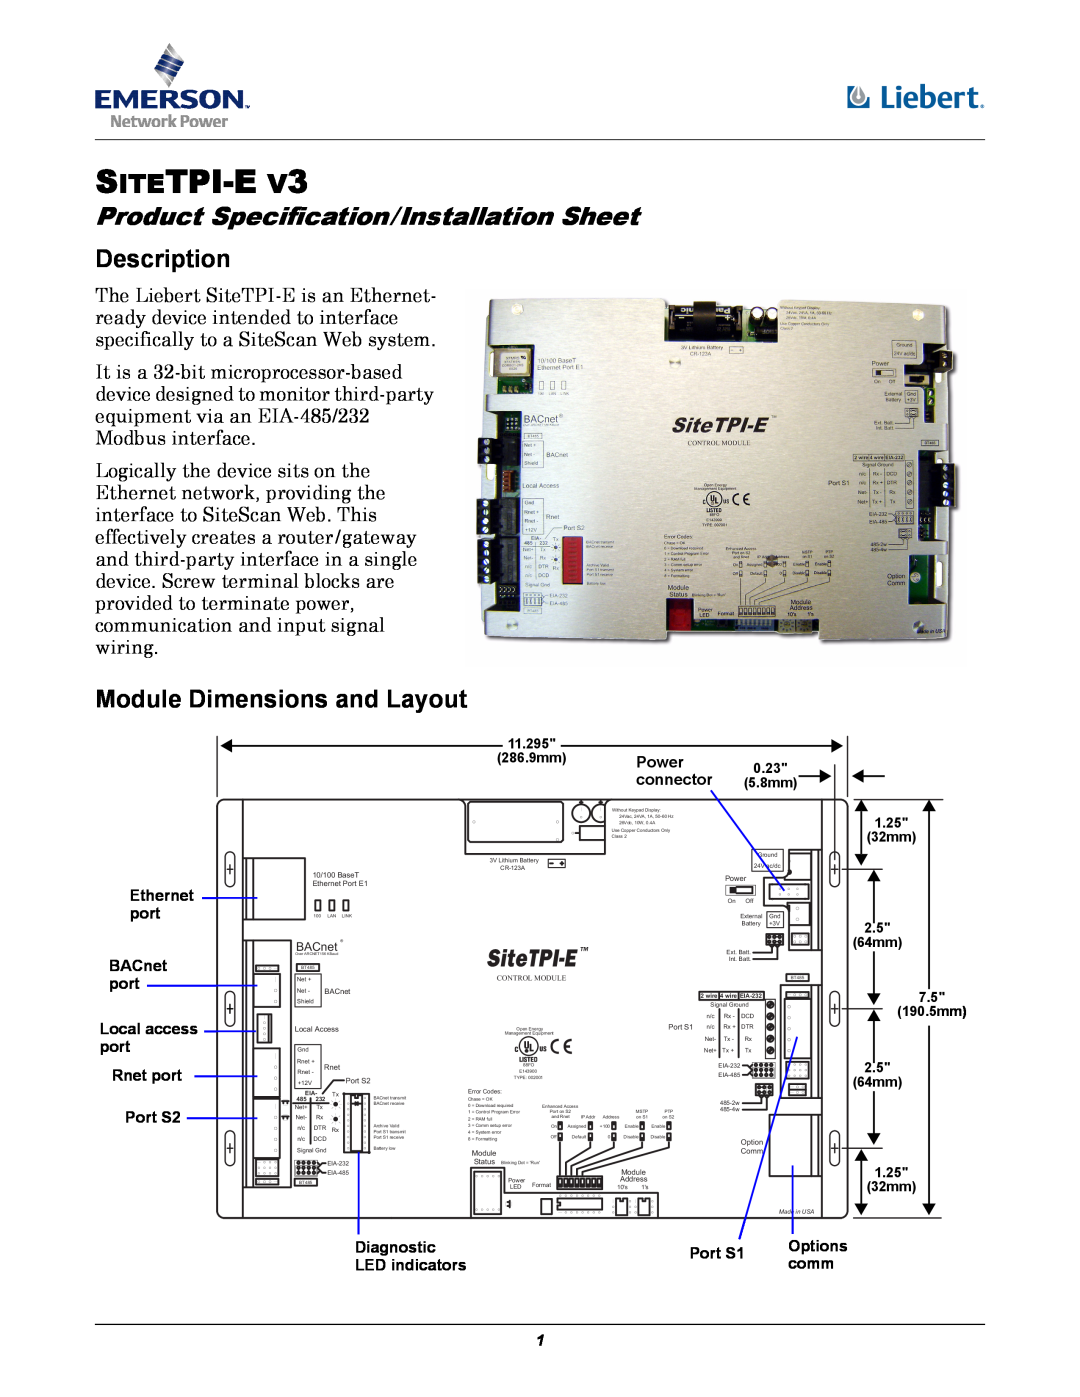 Emerson SITETPI-E V3 dimensions Description, Module Dimensions and Layout, Sitetpi-E, SiteTPI-E 